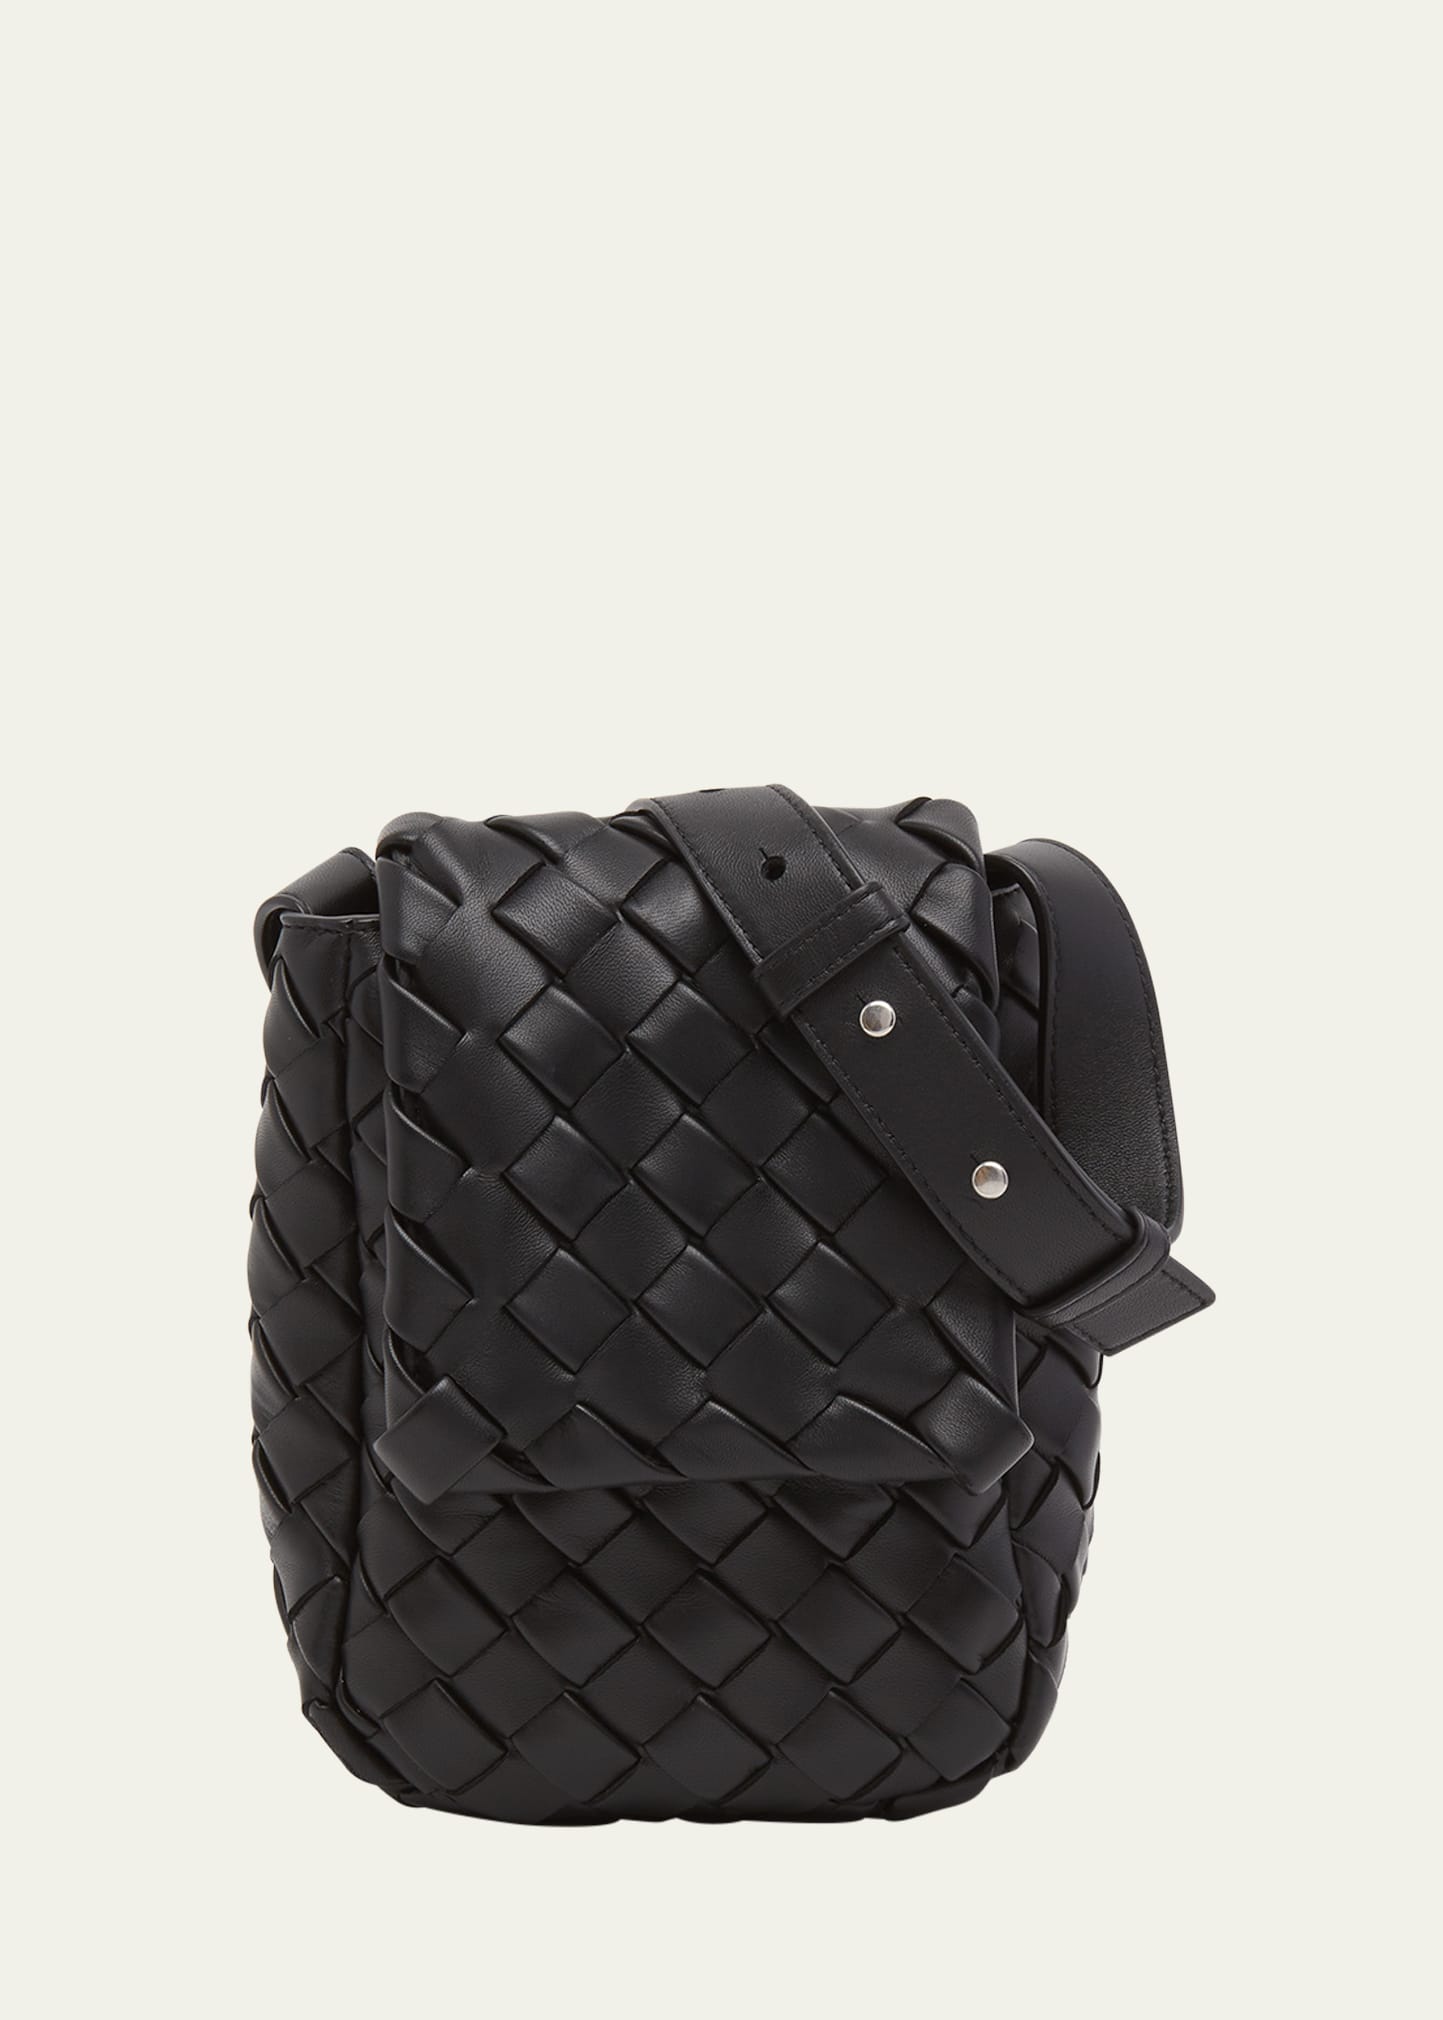 Men's Mini Padded Intrecciato Leather Crossbody Bag